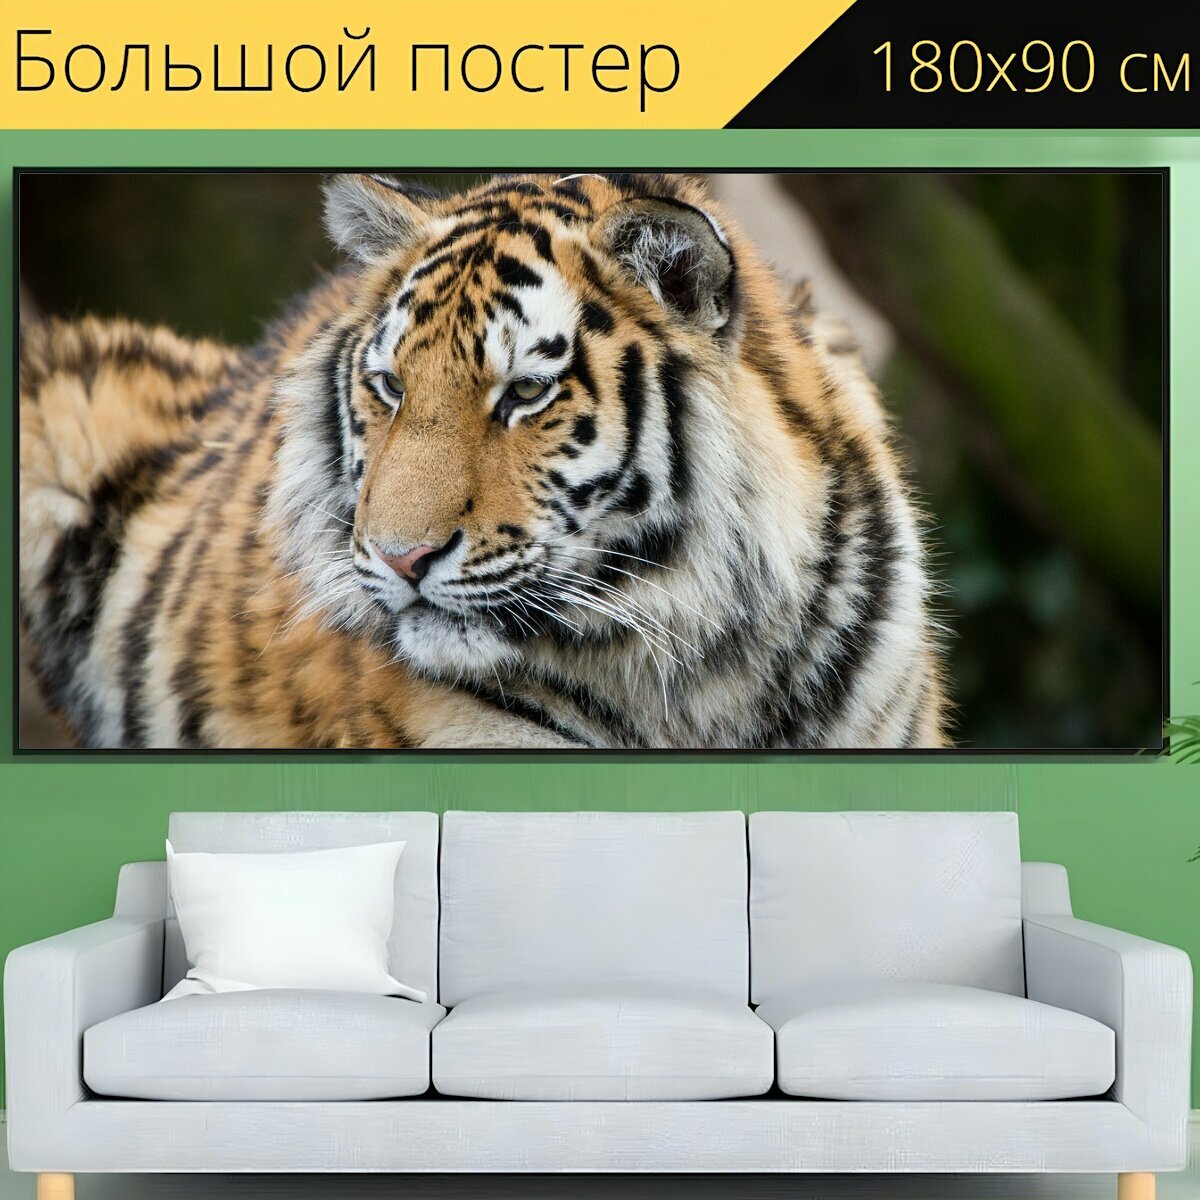 Большой постер "Тигр, зоопарк, кёльн" 180 x 90 см. для интерьера